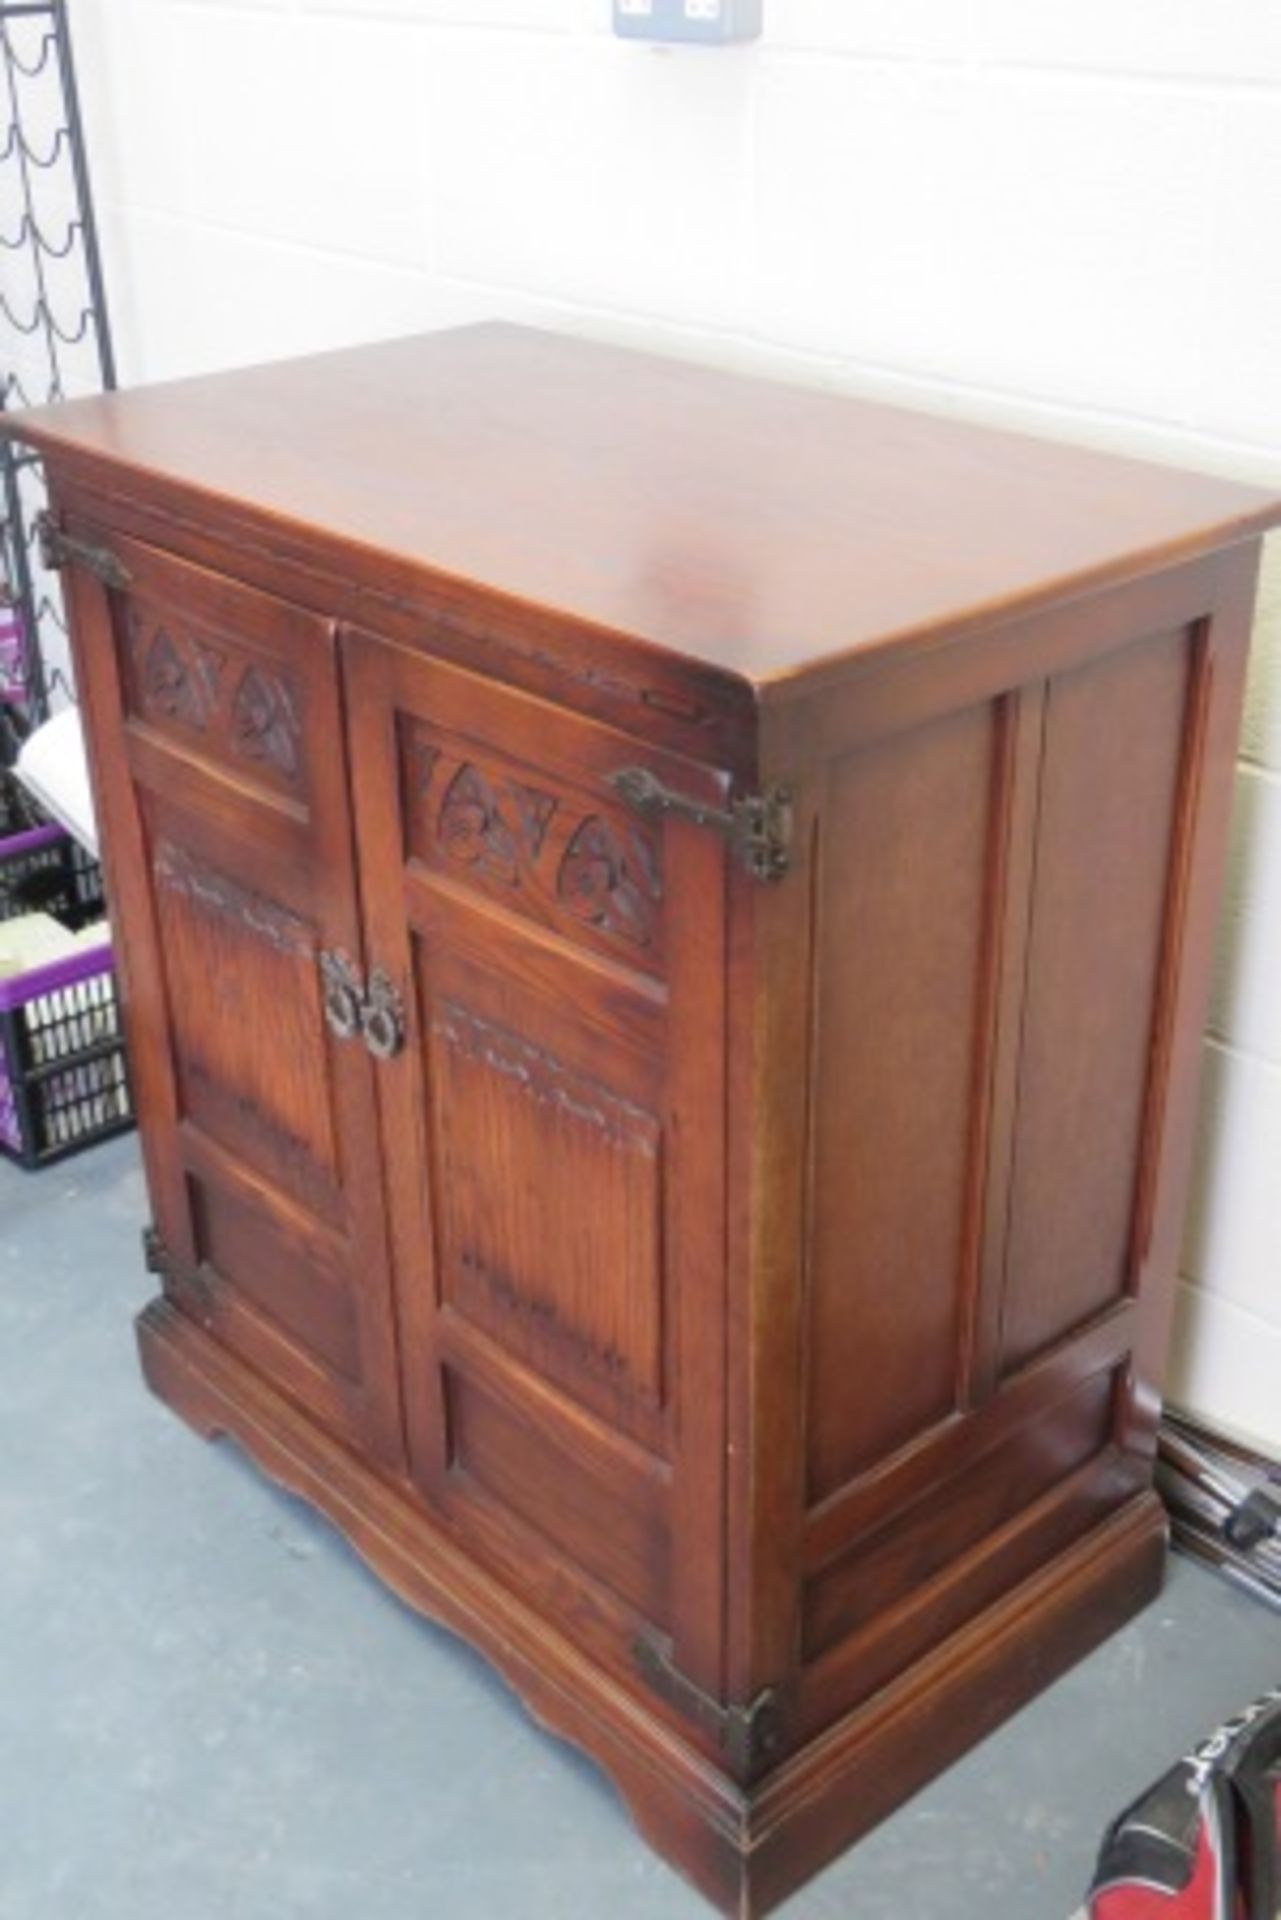 Vintage Carved Wooden Tv Cabinet - Image 2 of 3